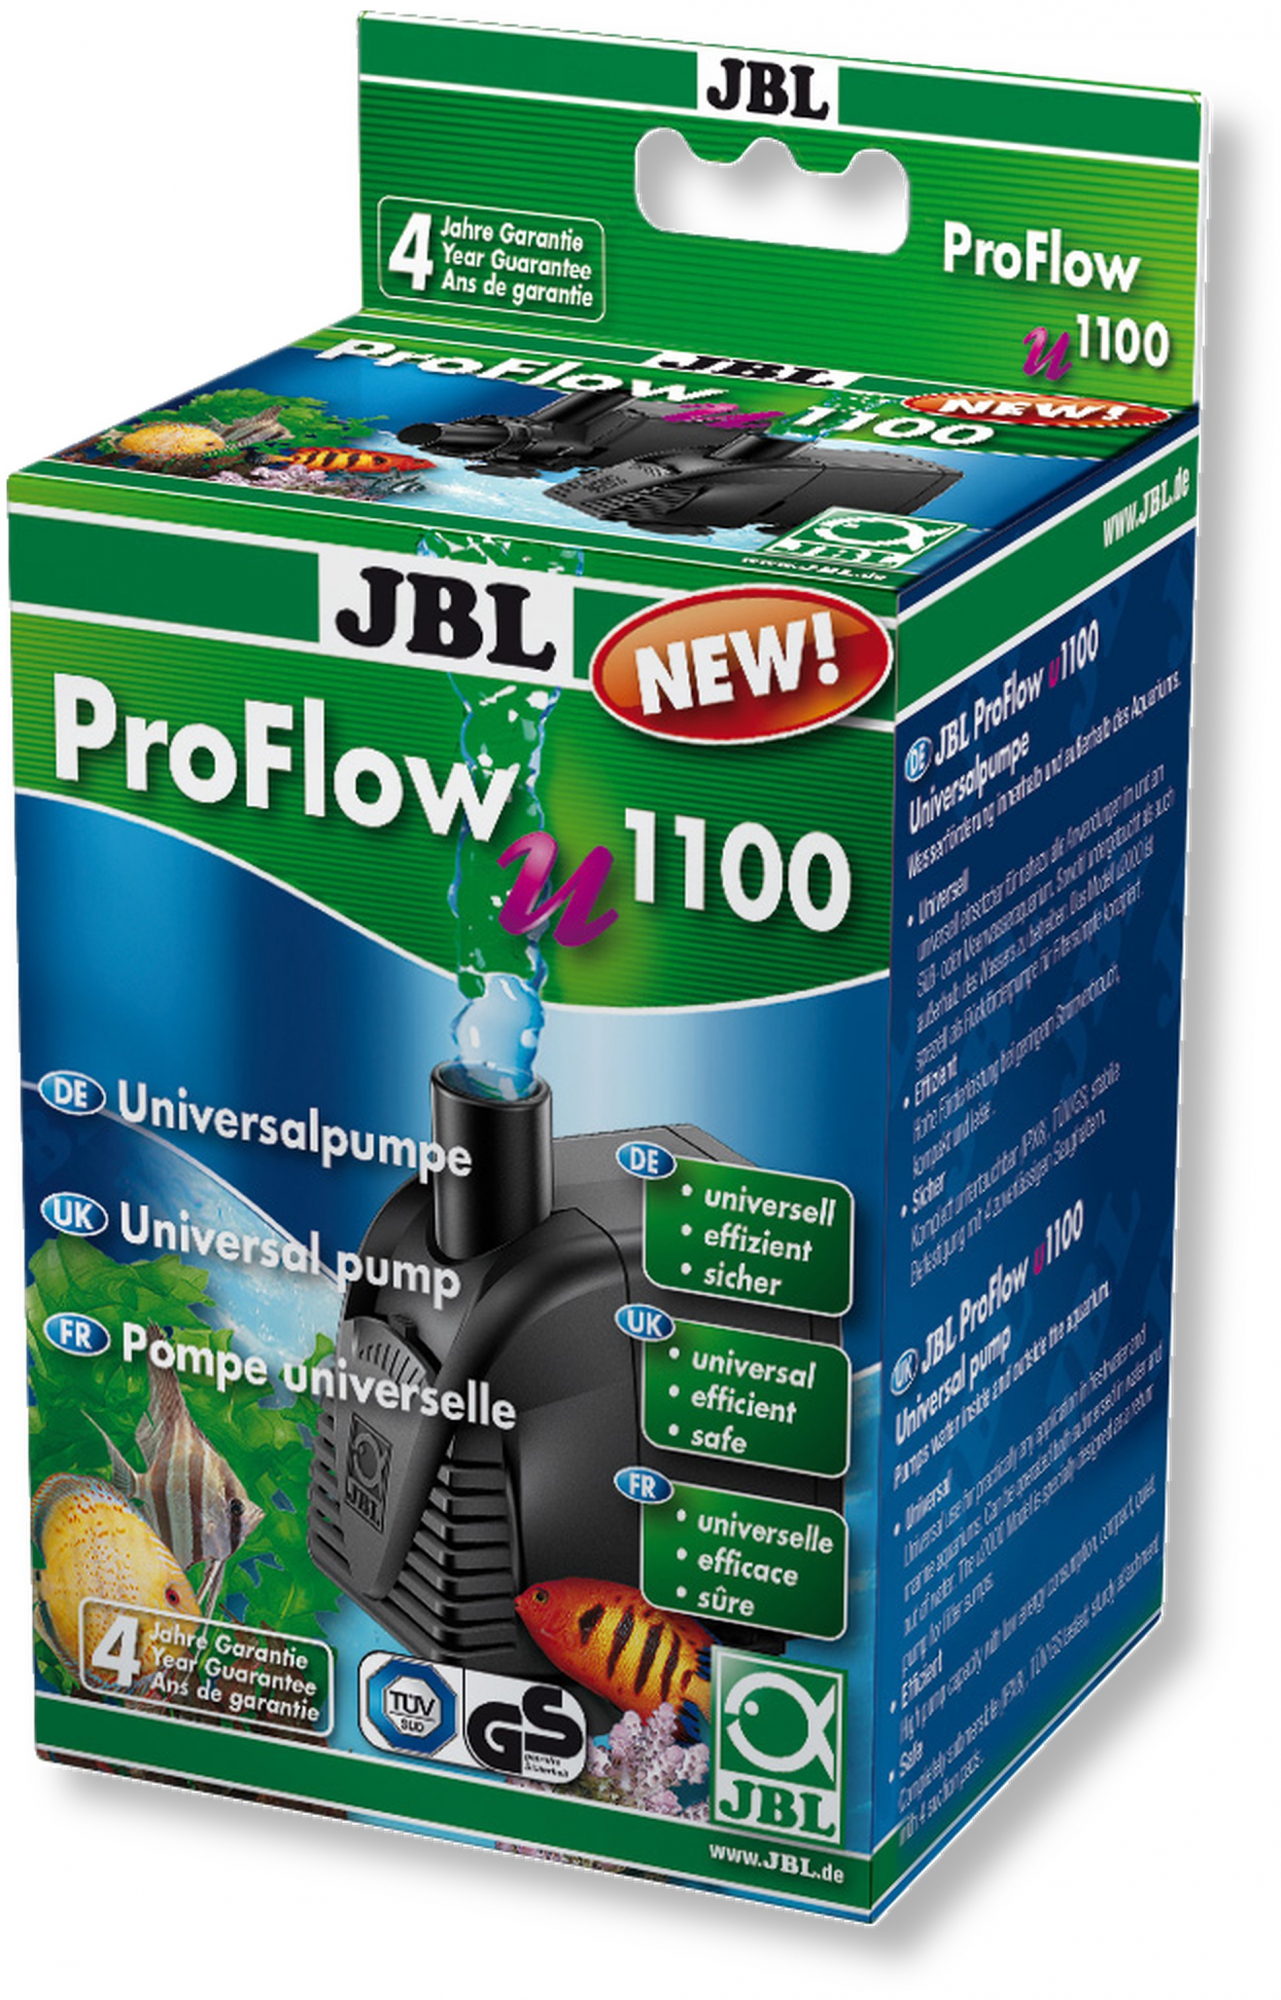 JBL Proflow , pompa universale - diversi modelli disponibili